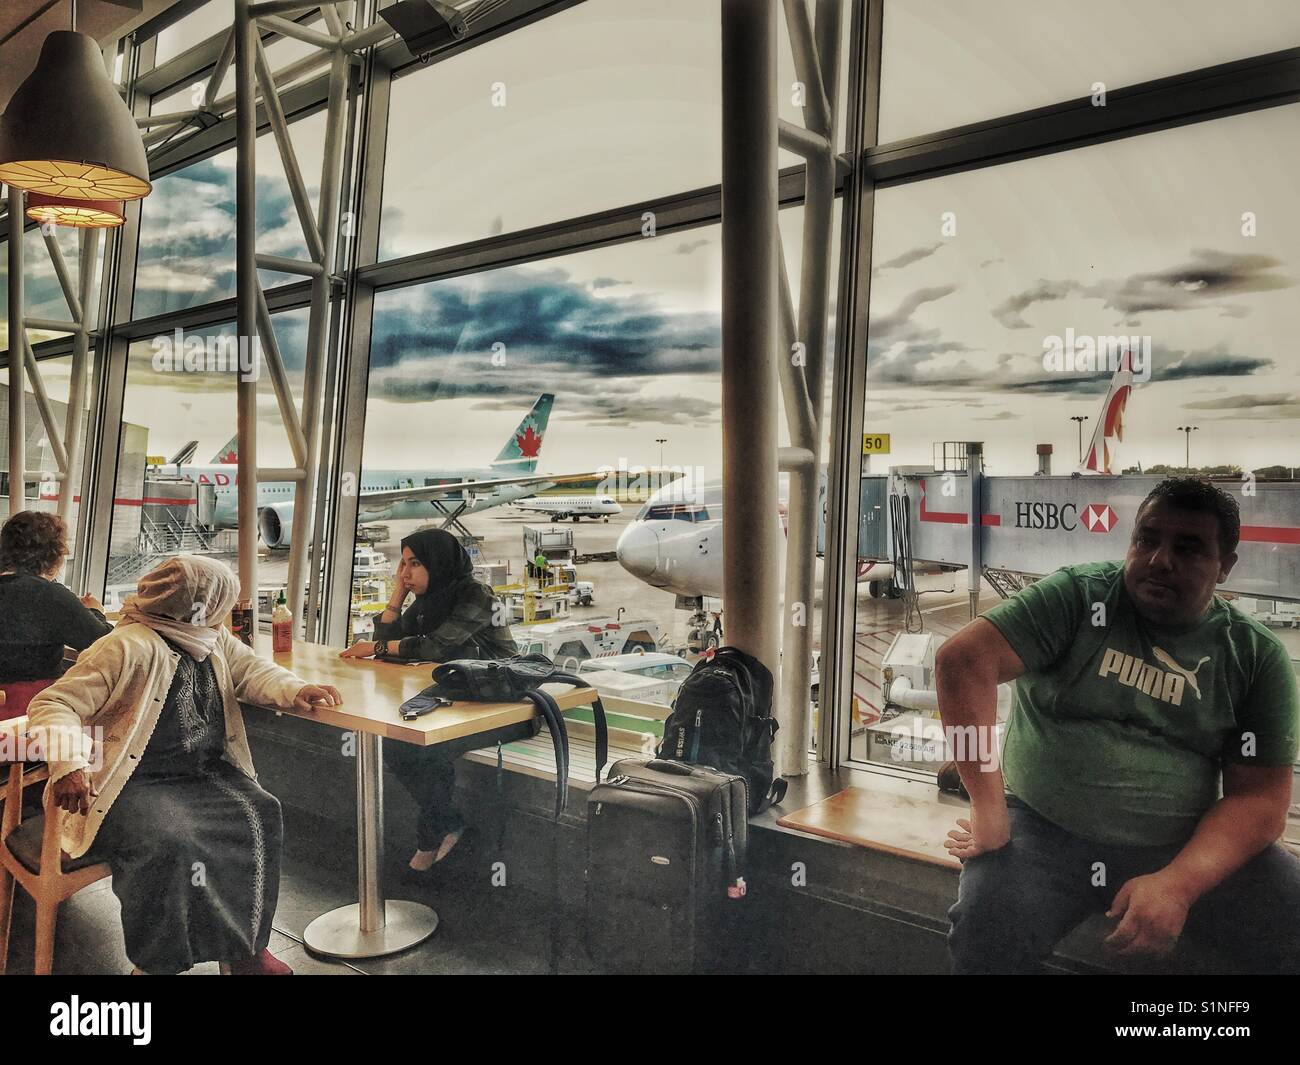 La fenêtre de l'aéroport et d'attente. Banque D'Images